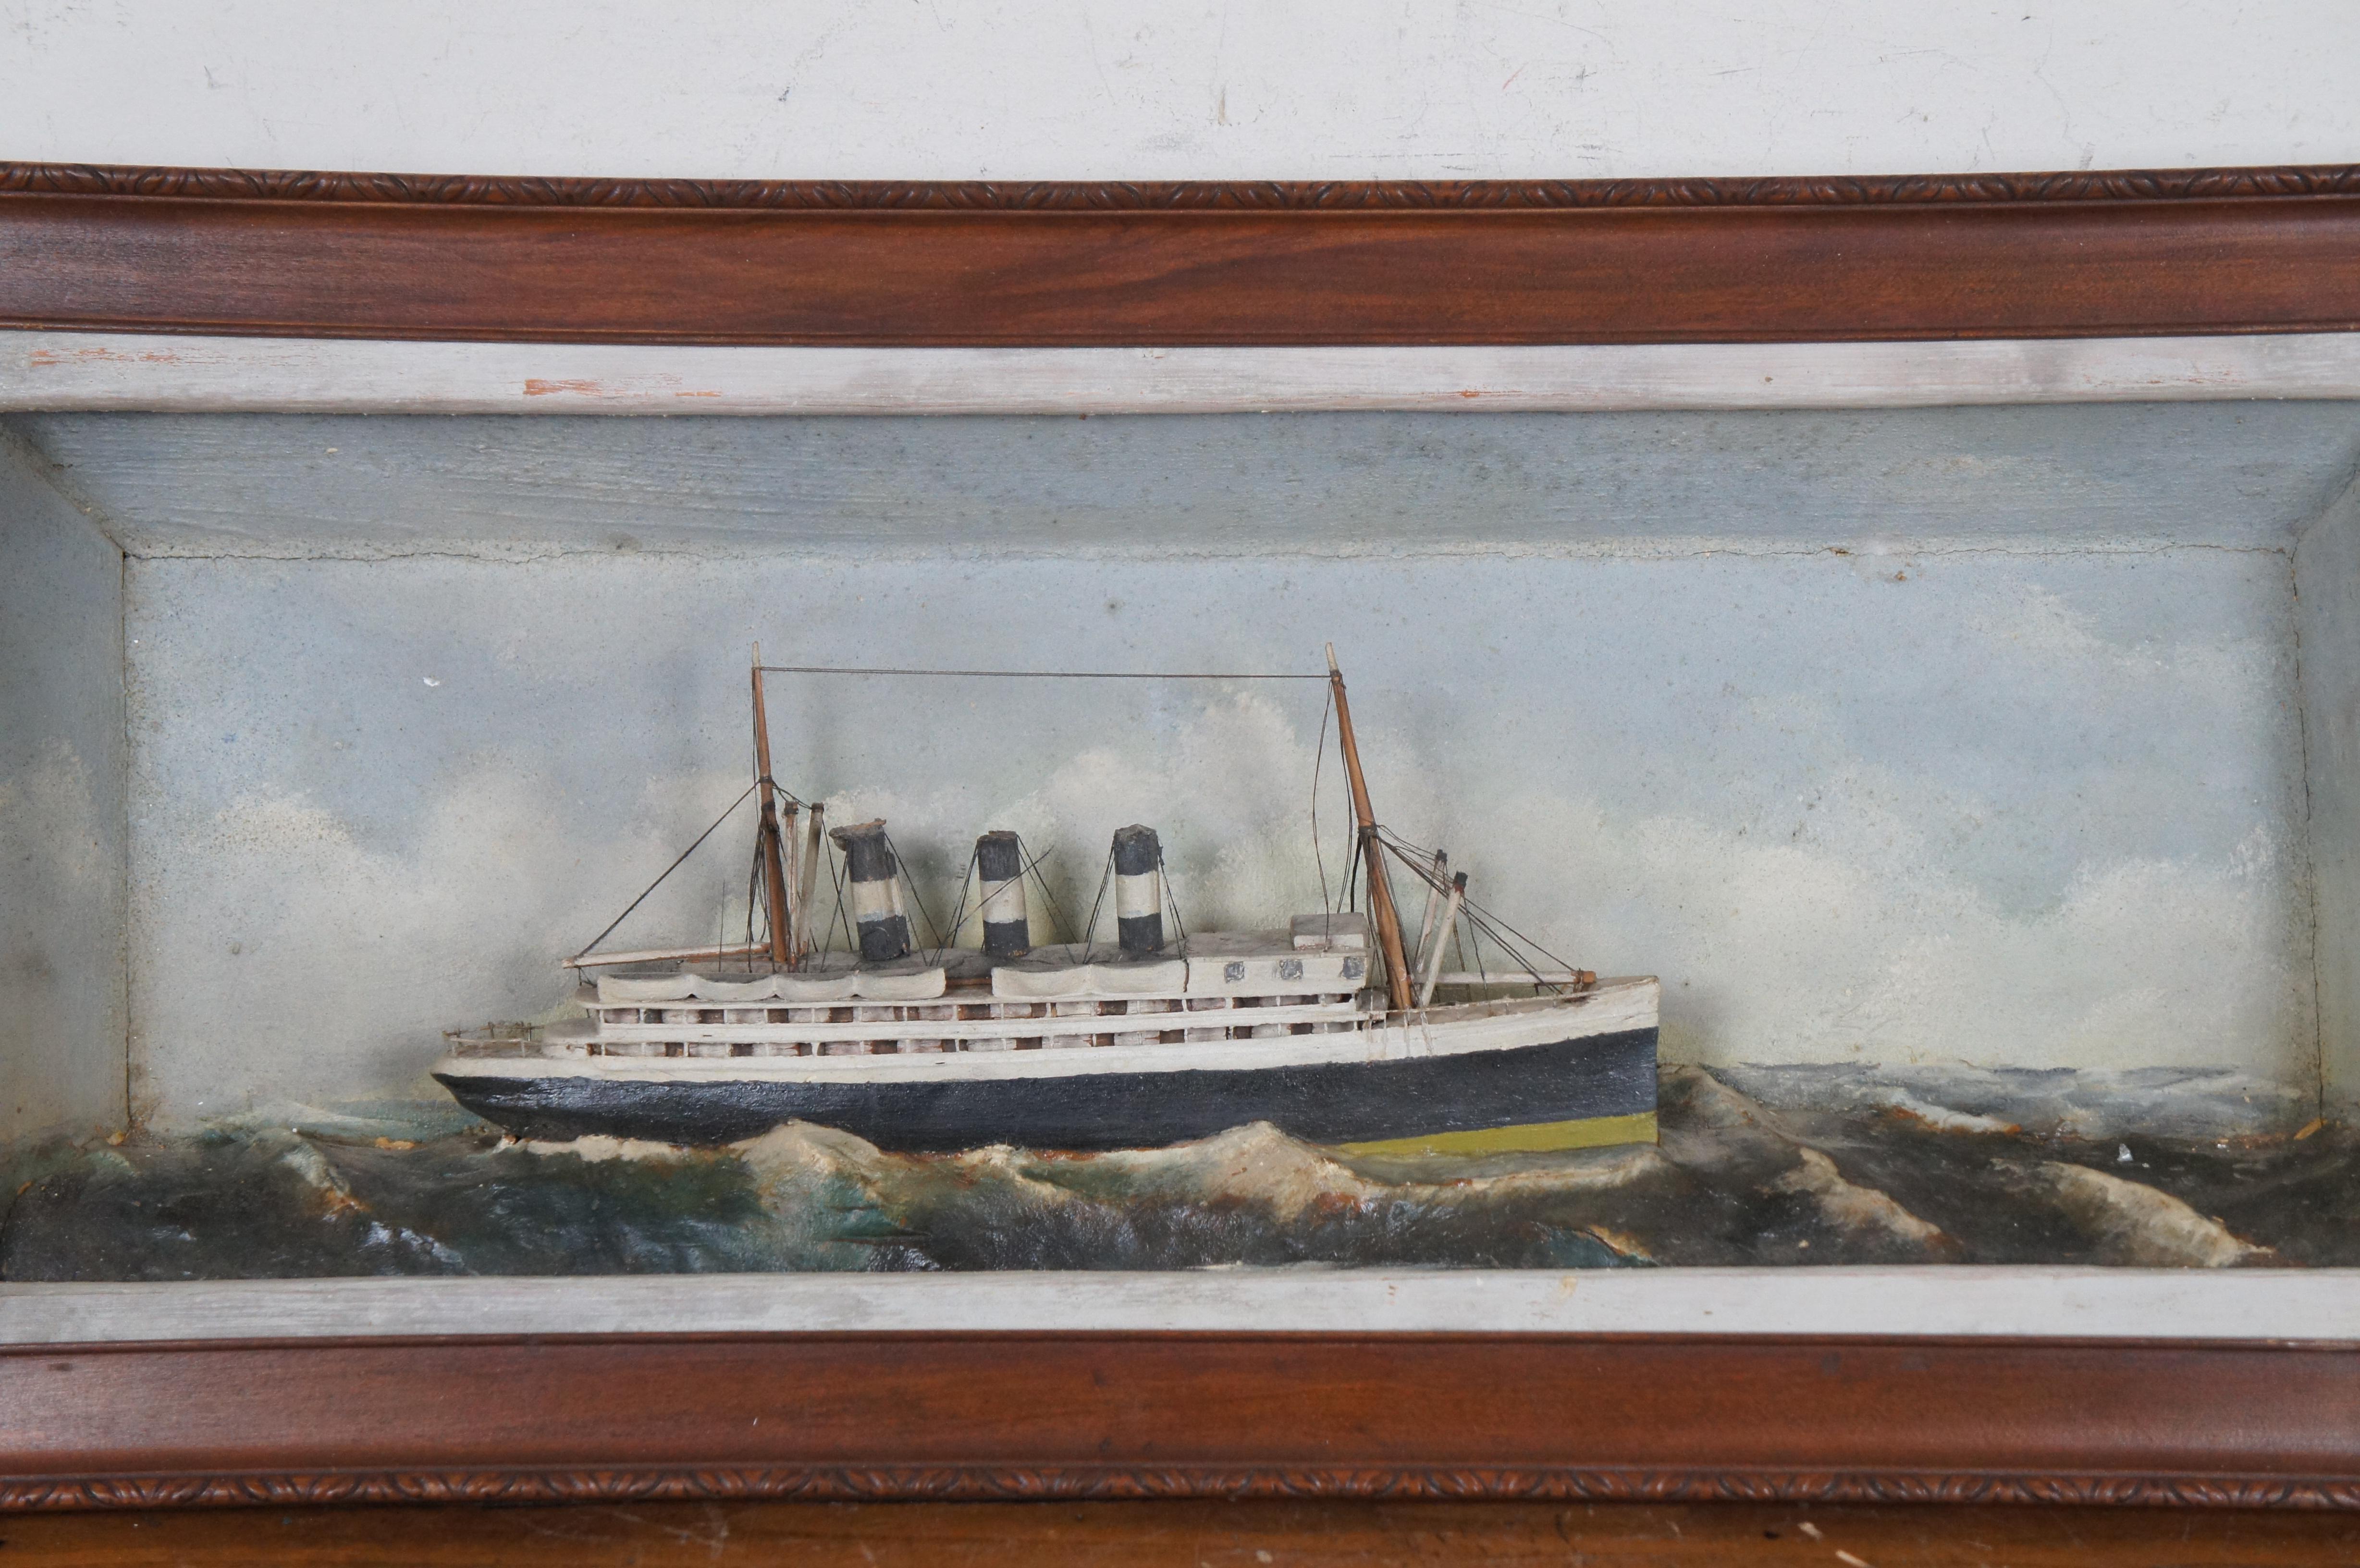 Antike nautische maritime Schifffahrtsschiff Ozeandampfer-Dampfschiff Schattenbox Diorama 27